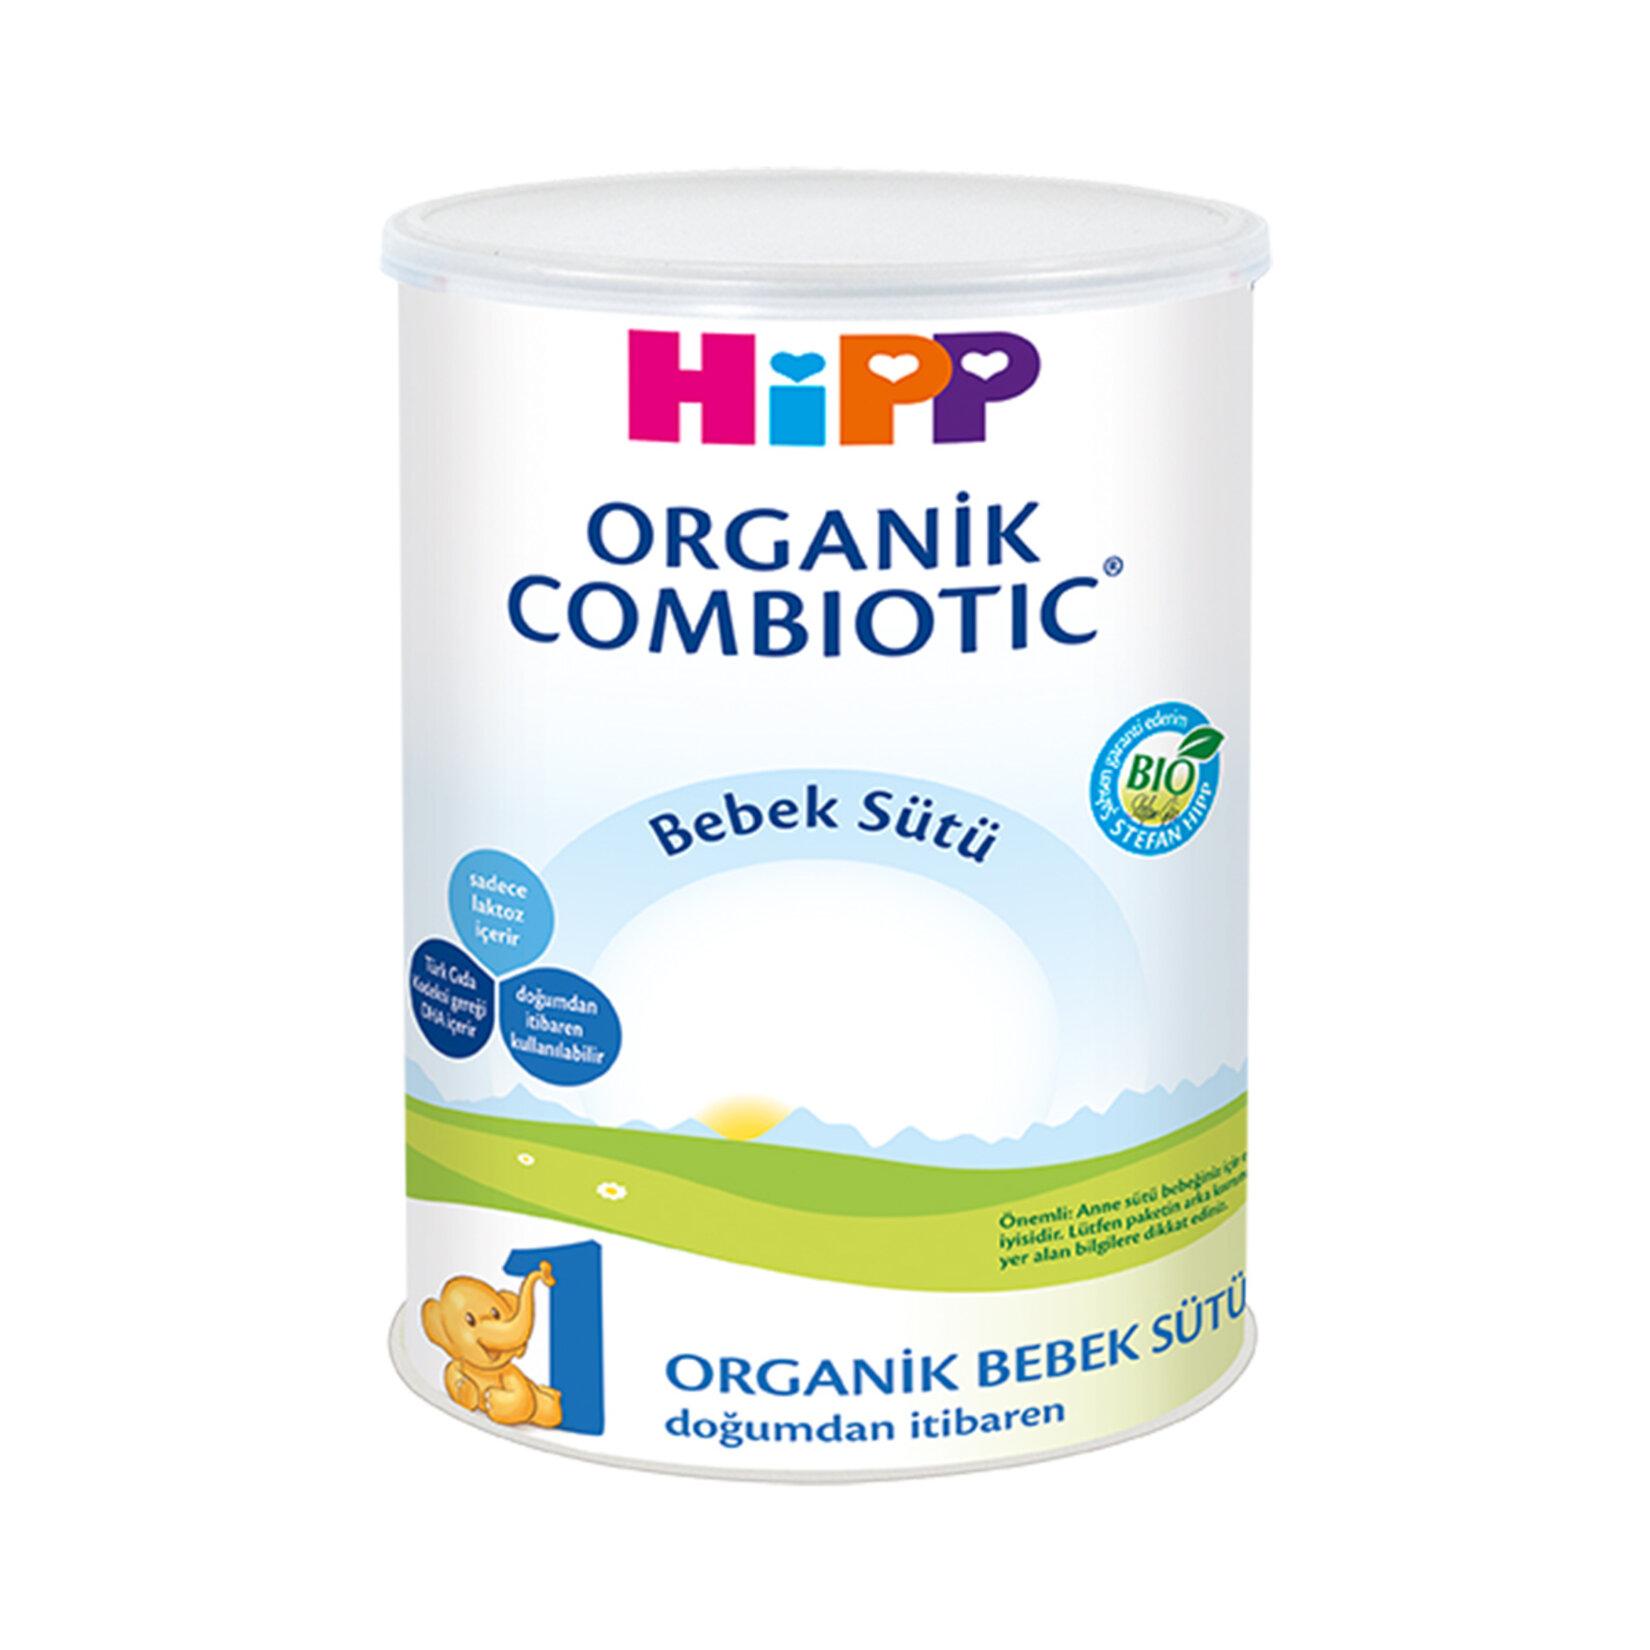 Hipp 1 Organik Combiotic Devam Sütü 350 gr 2'li Paket